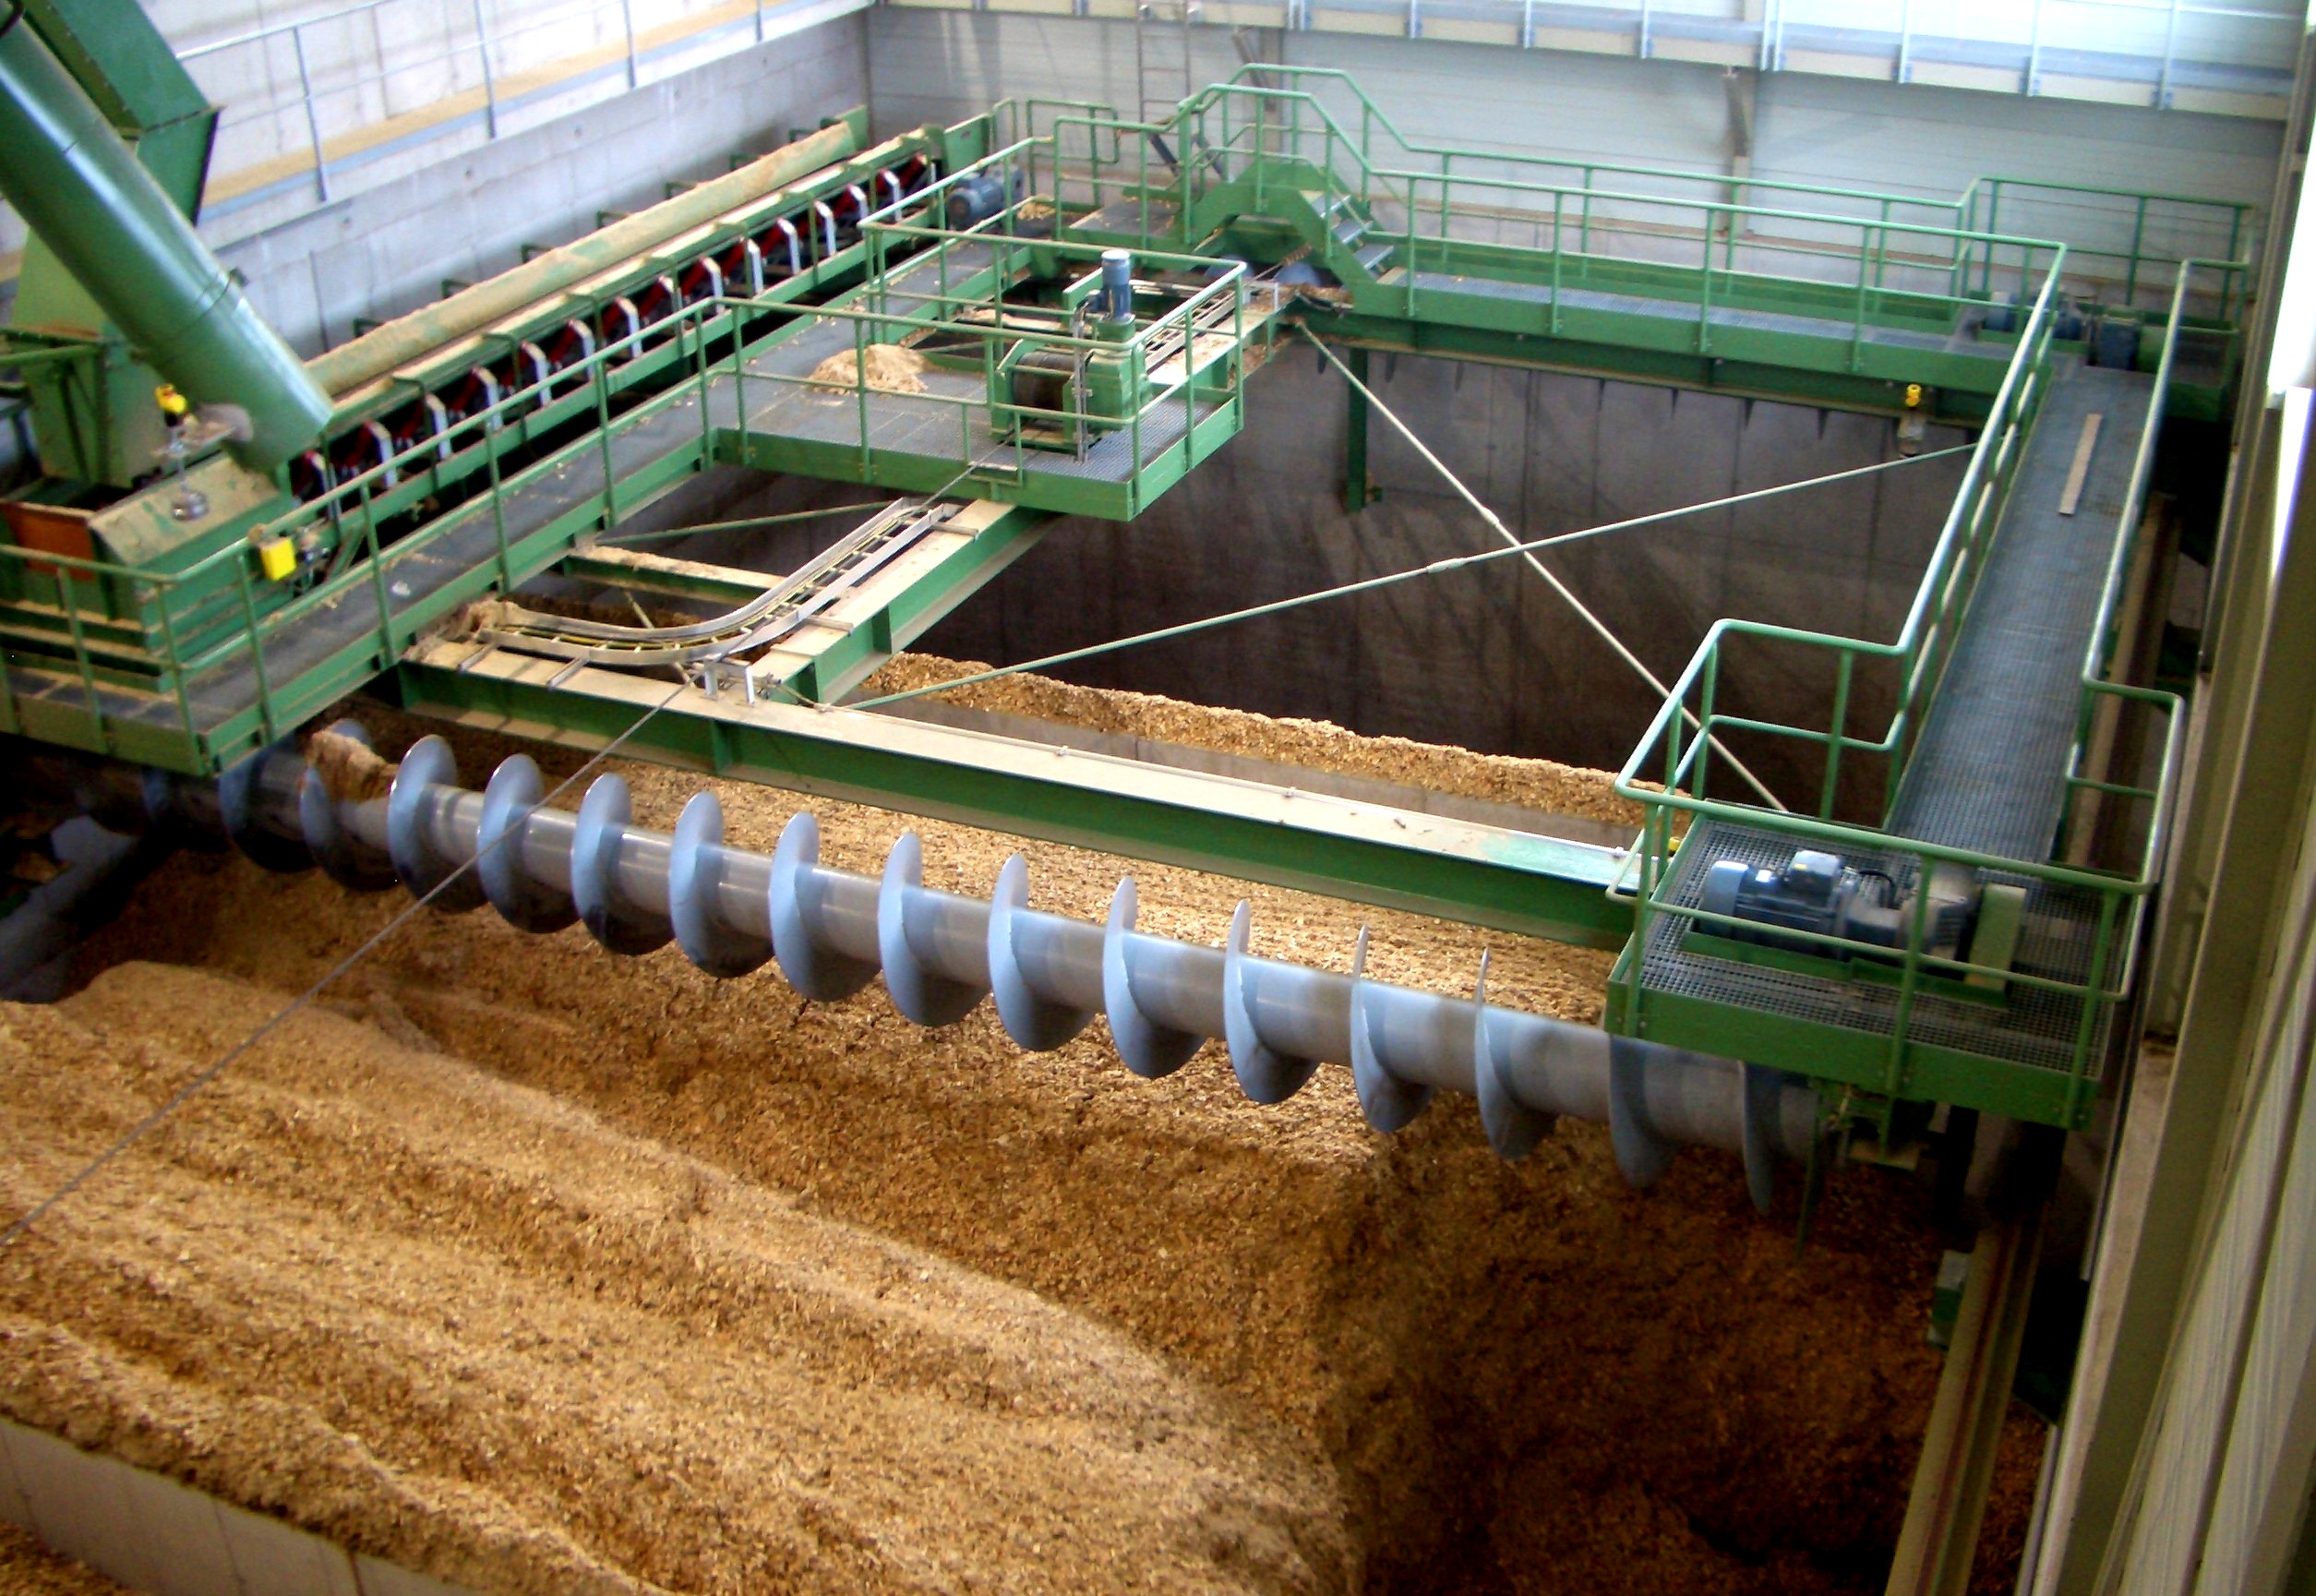 FMW Longitudinal Discharge Screw in a Biomass Storage